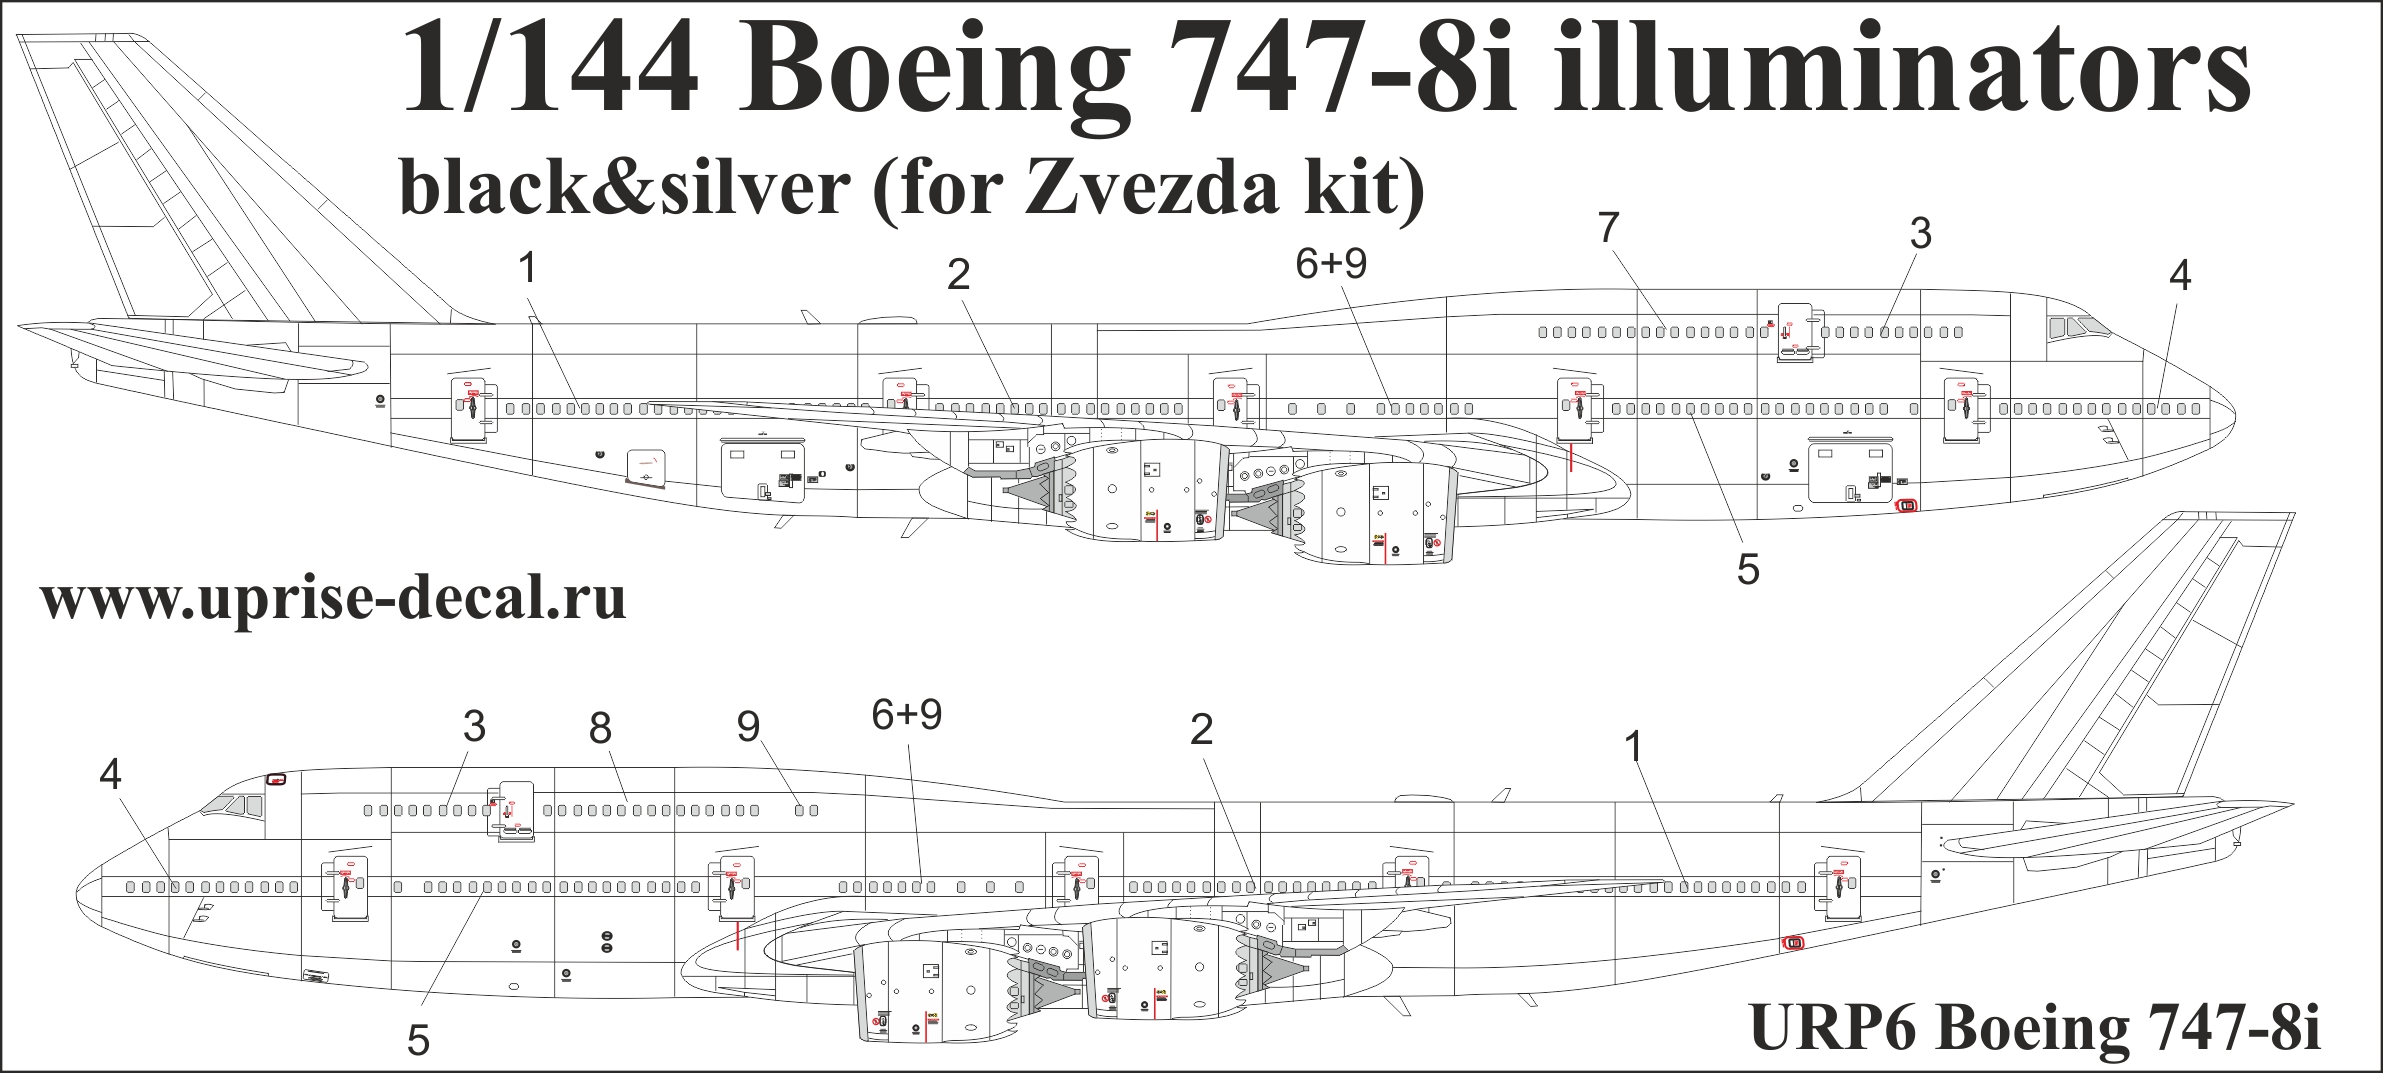 URP6  декали  Boeing 747-8i for Zvezda kit (black)  (1:144)